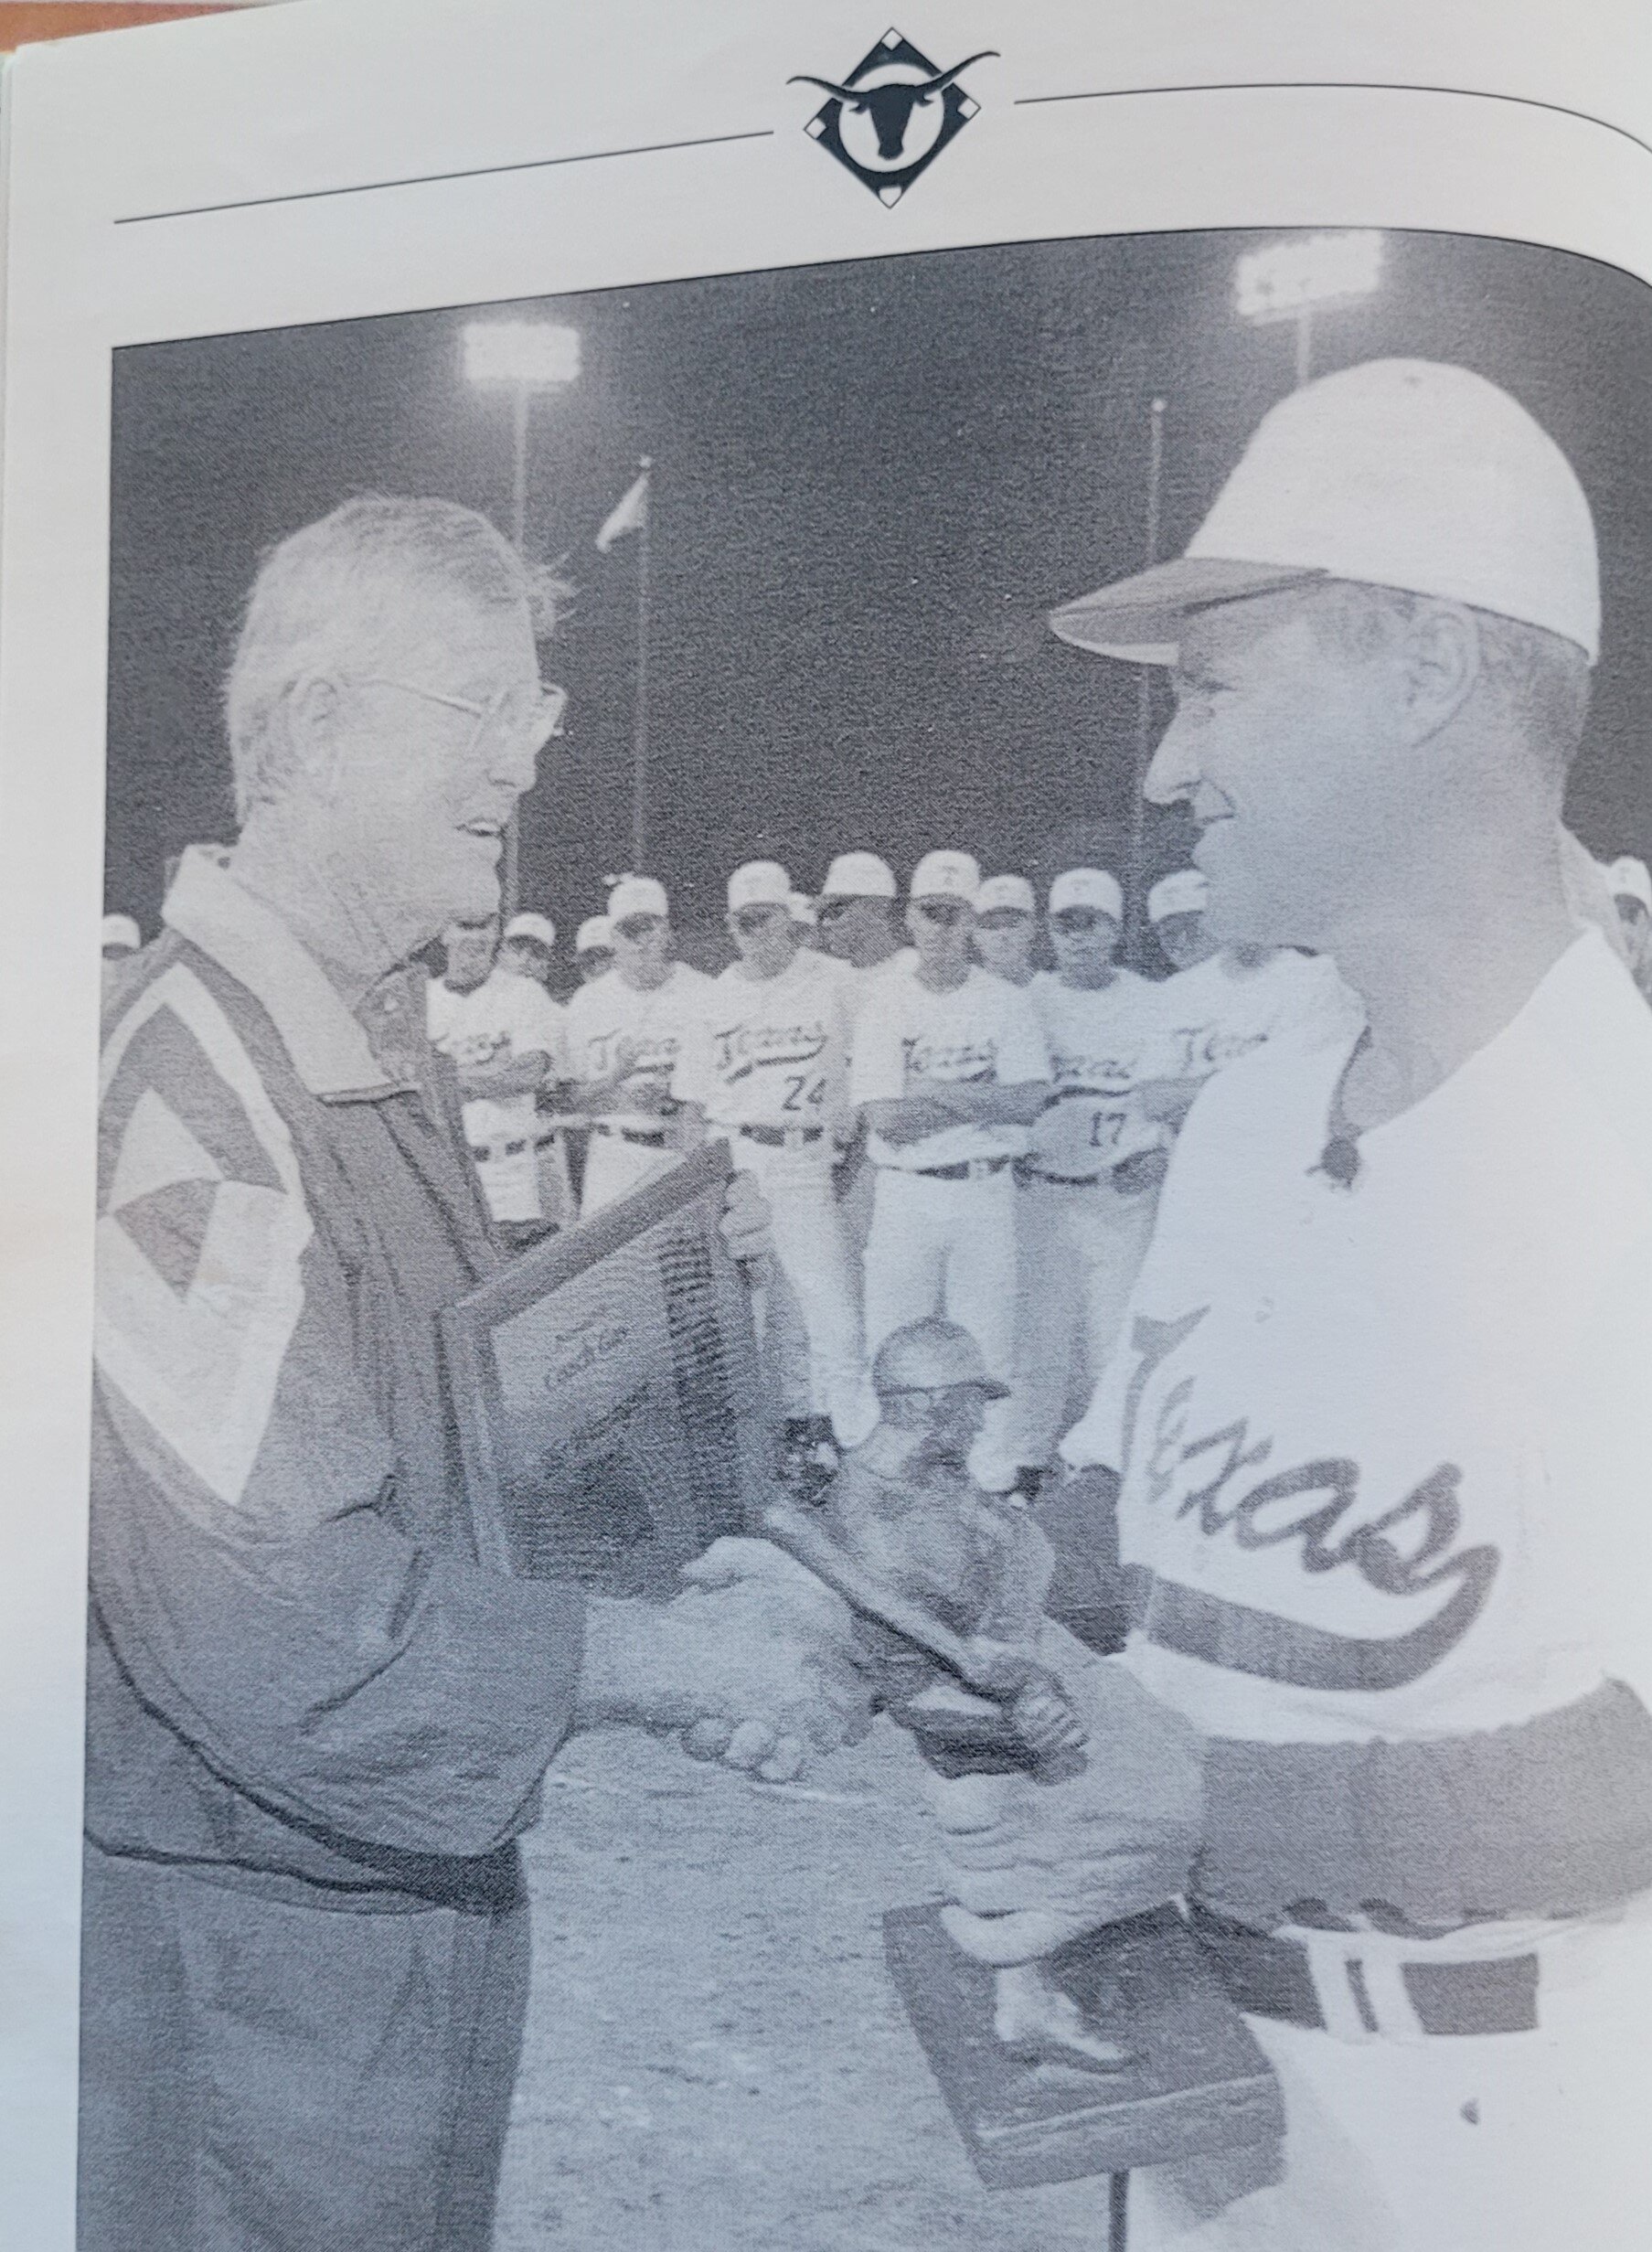 1994 Gus Baseball 1333 award ceremony (12).jpg